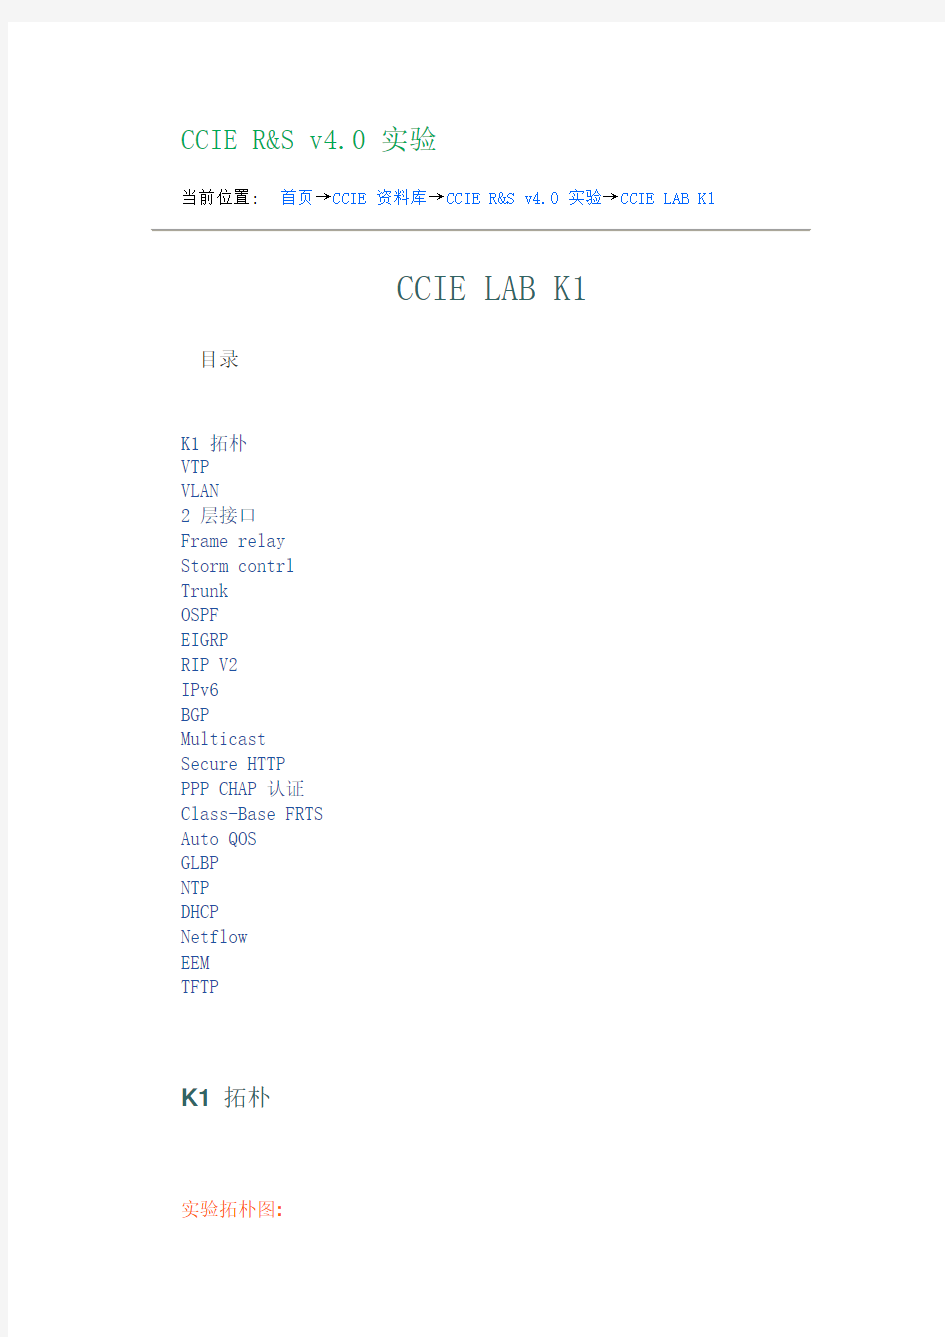 CCIE实验手册,K1,CCIE LAB